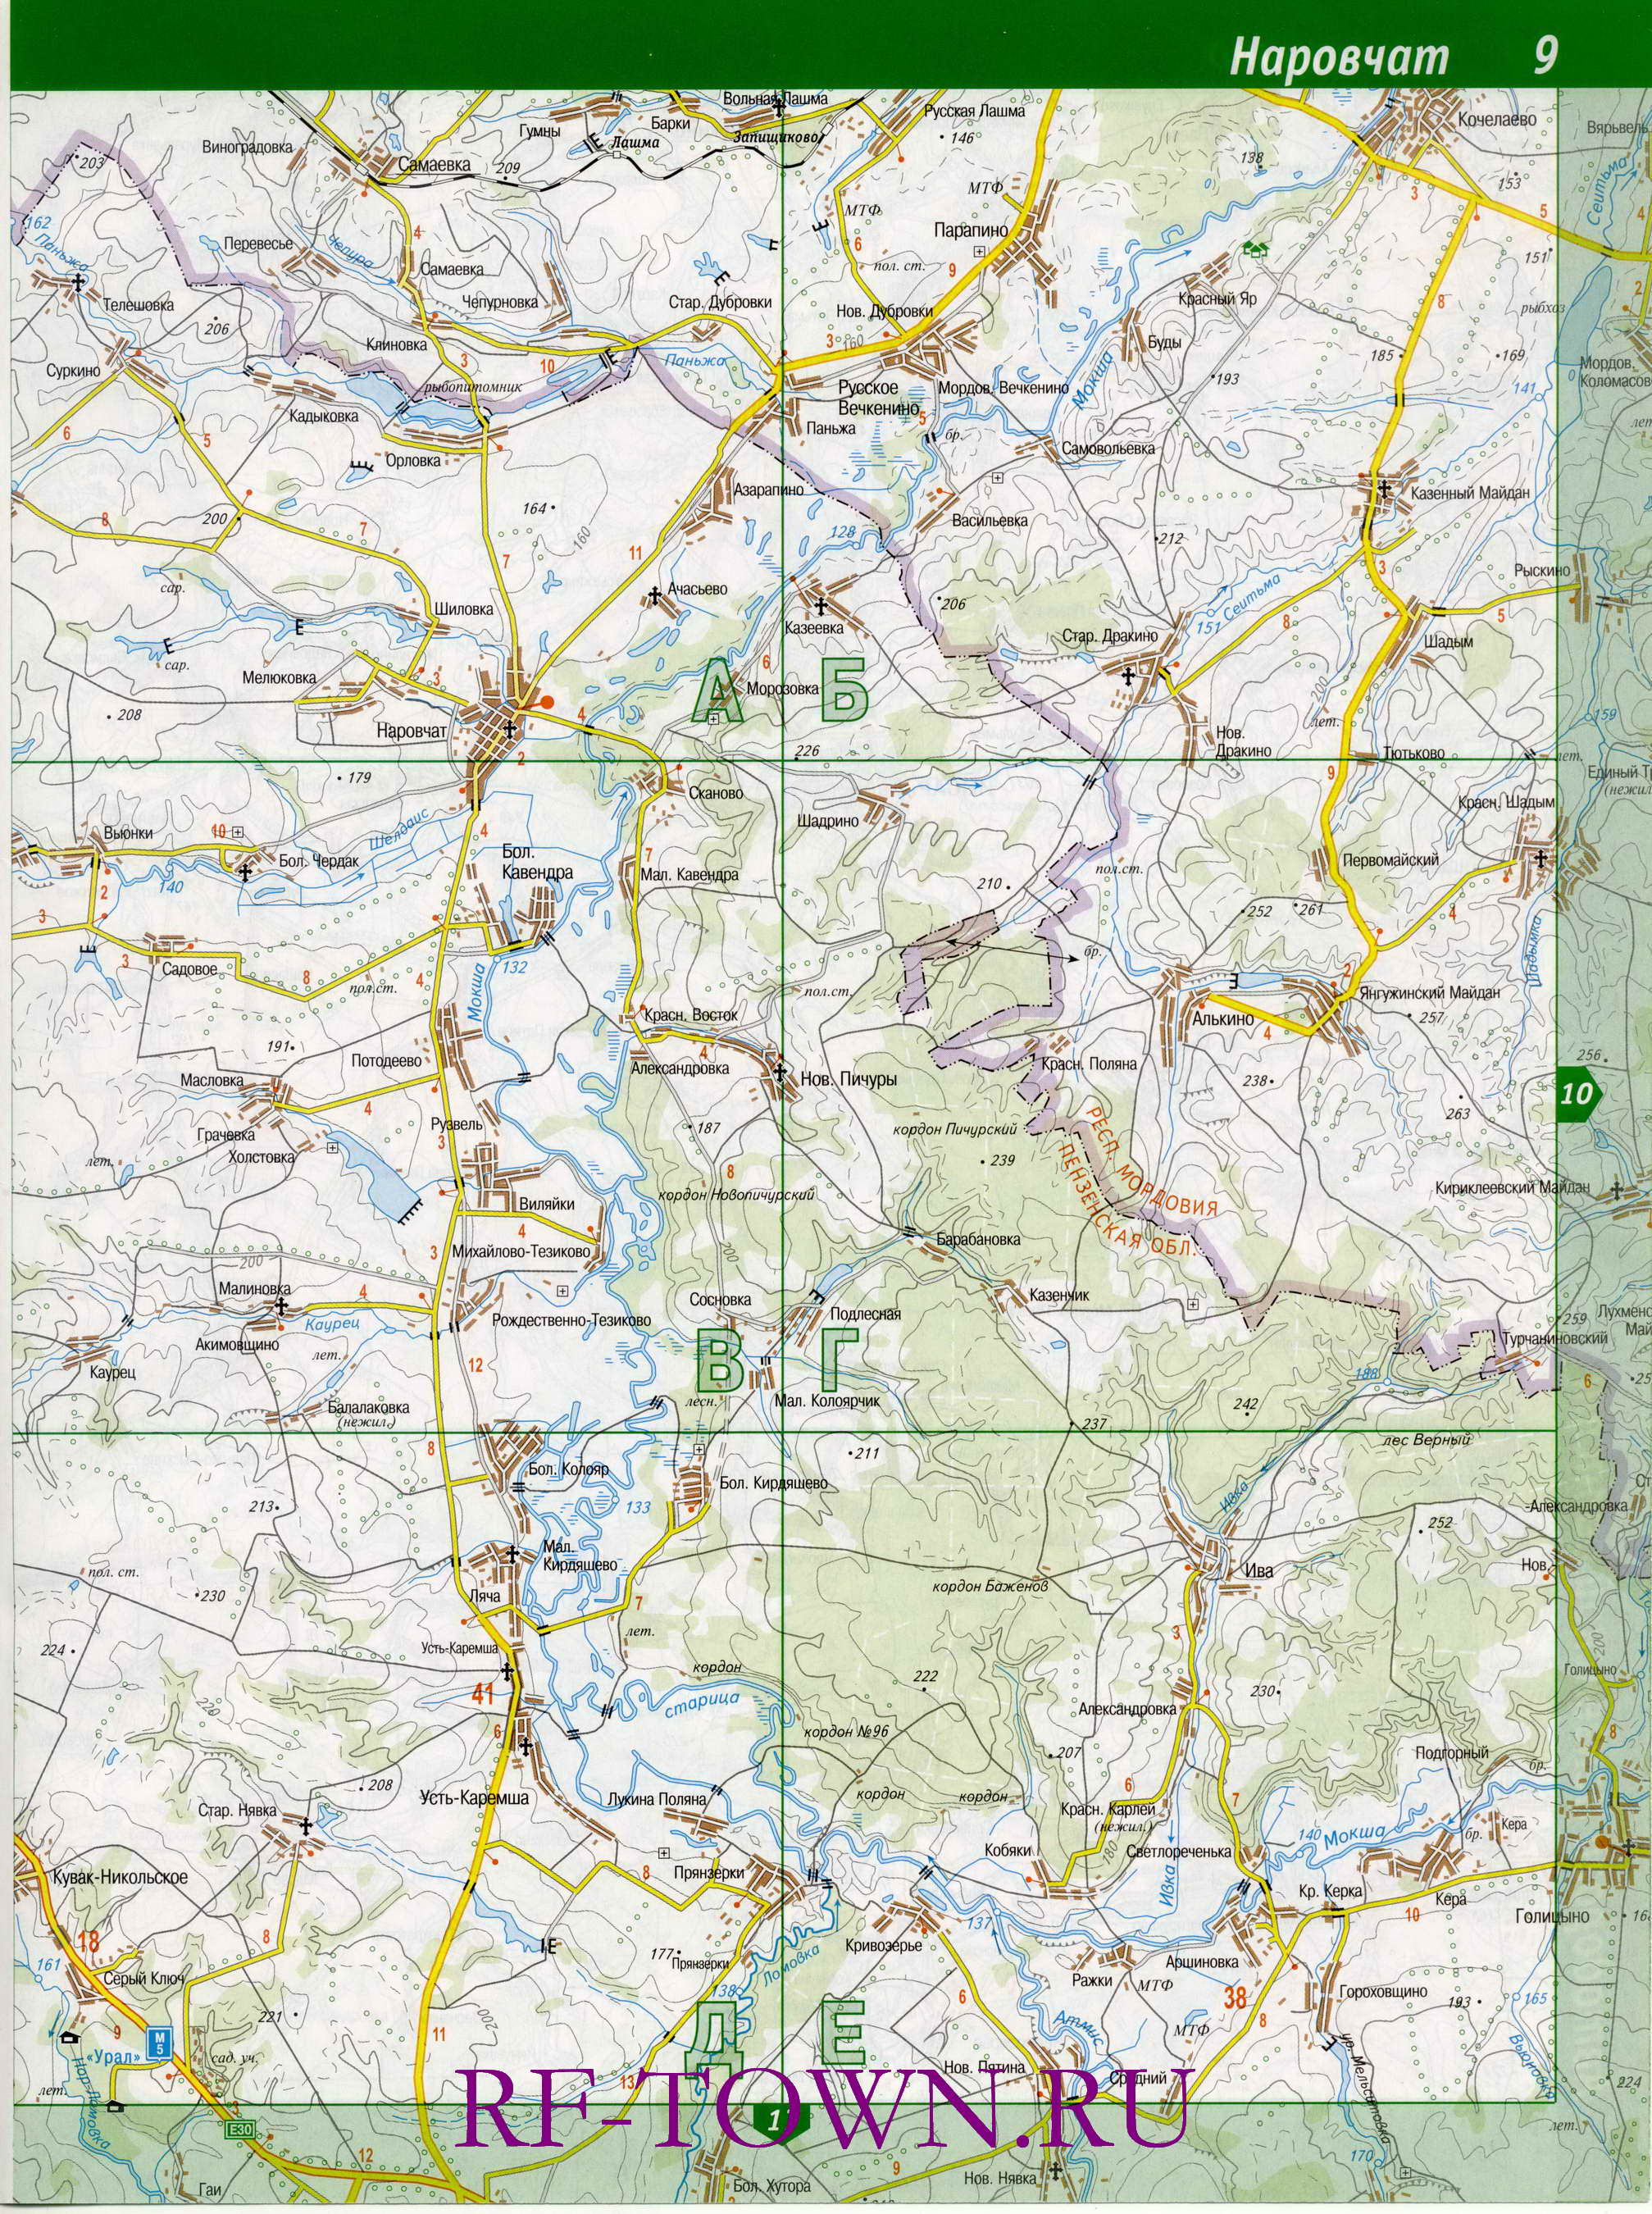 Наровчатский район Пензенской области. Карта дорог Наровчатского района Пензенской области, B0 - 